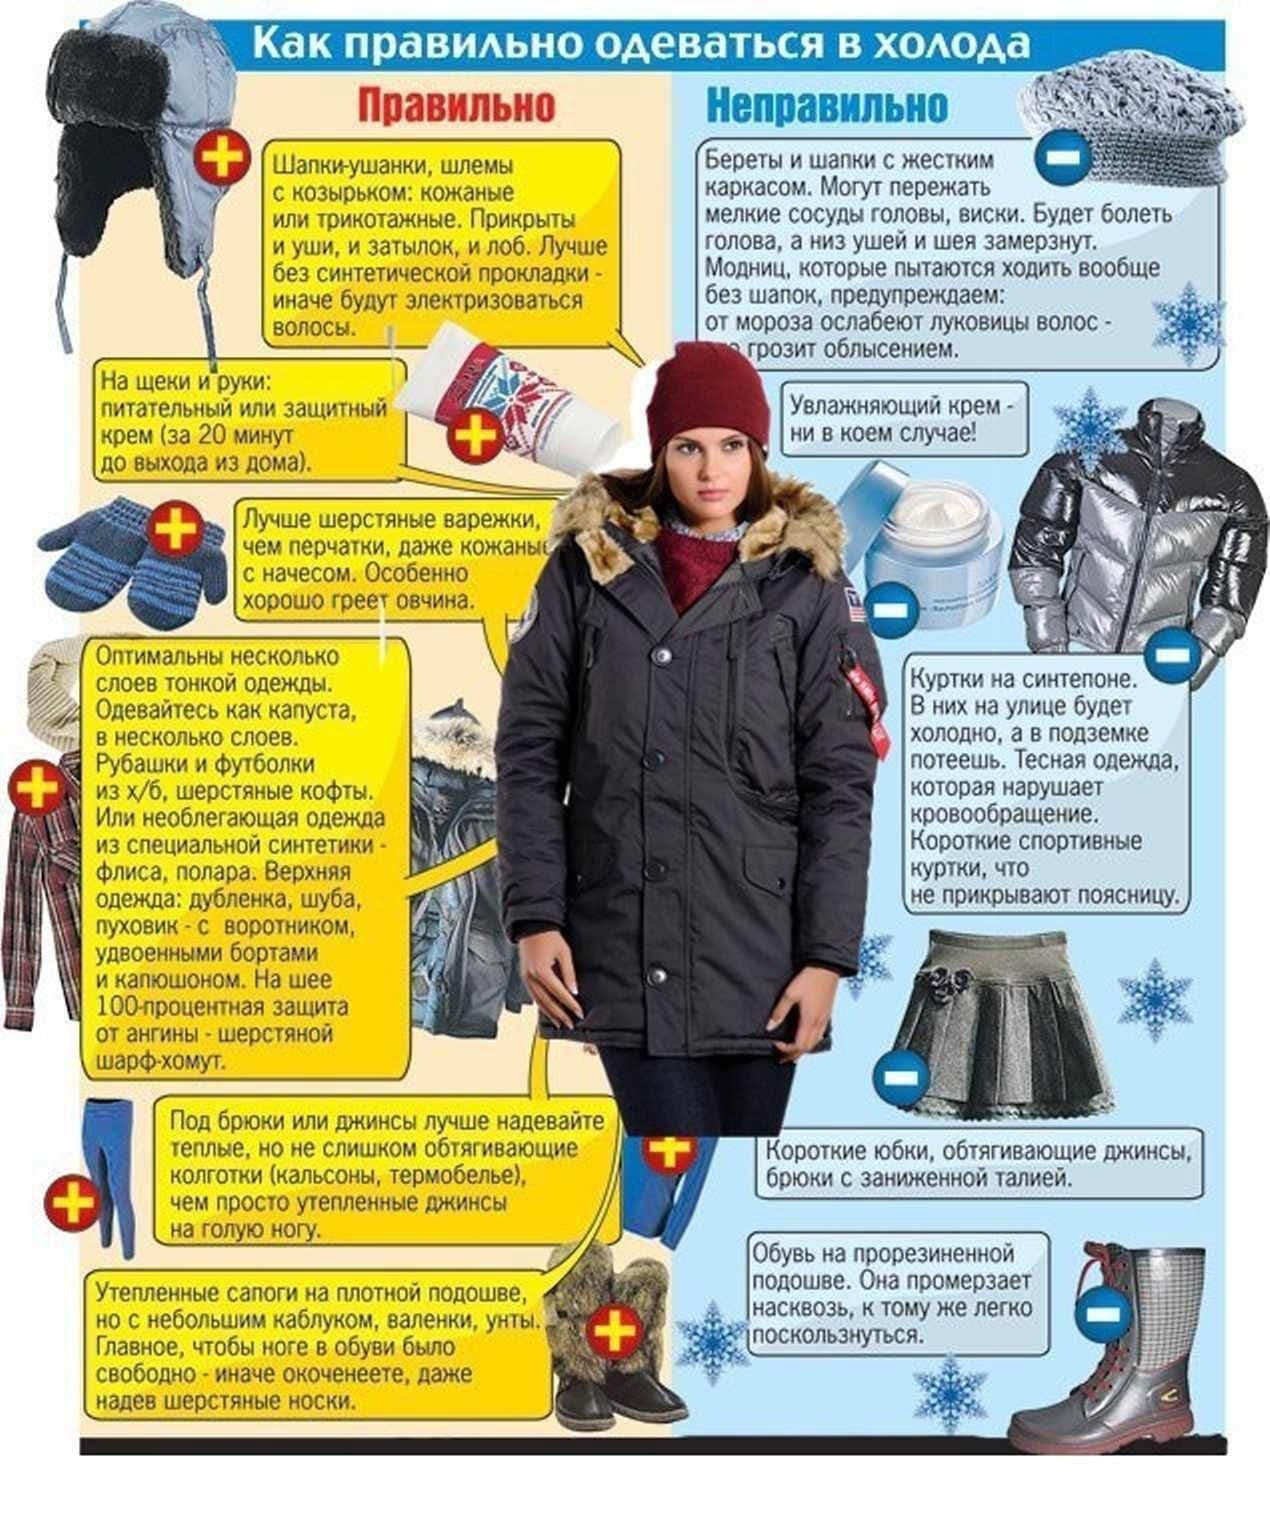 Почему одеваться потеплее. Правильная одежда зимой. КВК правилтео одеватся. Как правильно одеваться зимой. Одеваться зимой в Мороз.